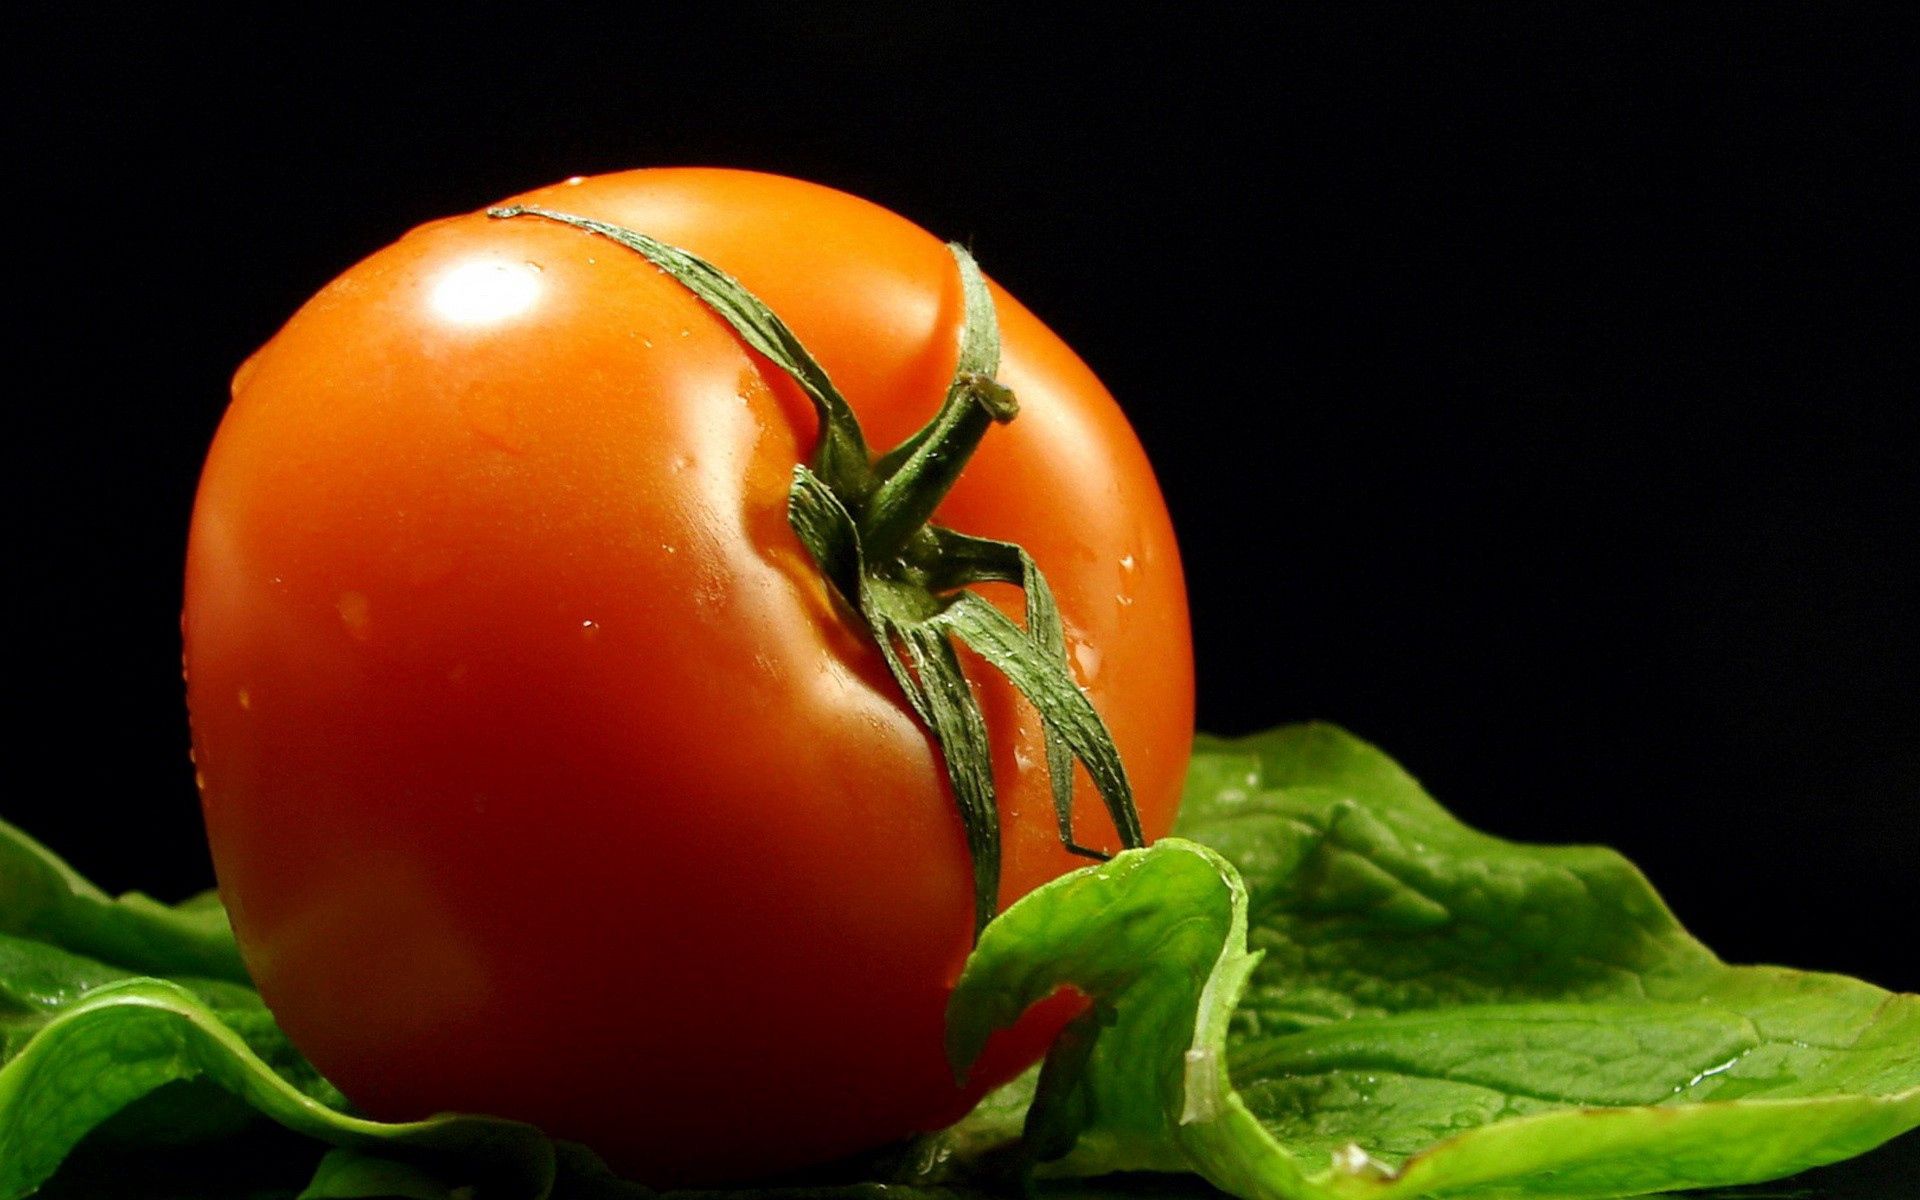 Ultra HD Tomato wallpaper